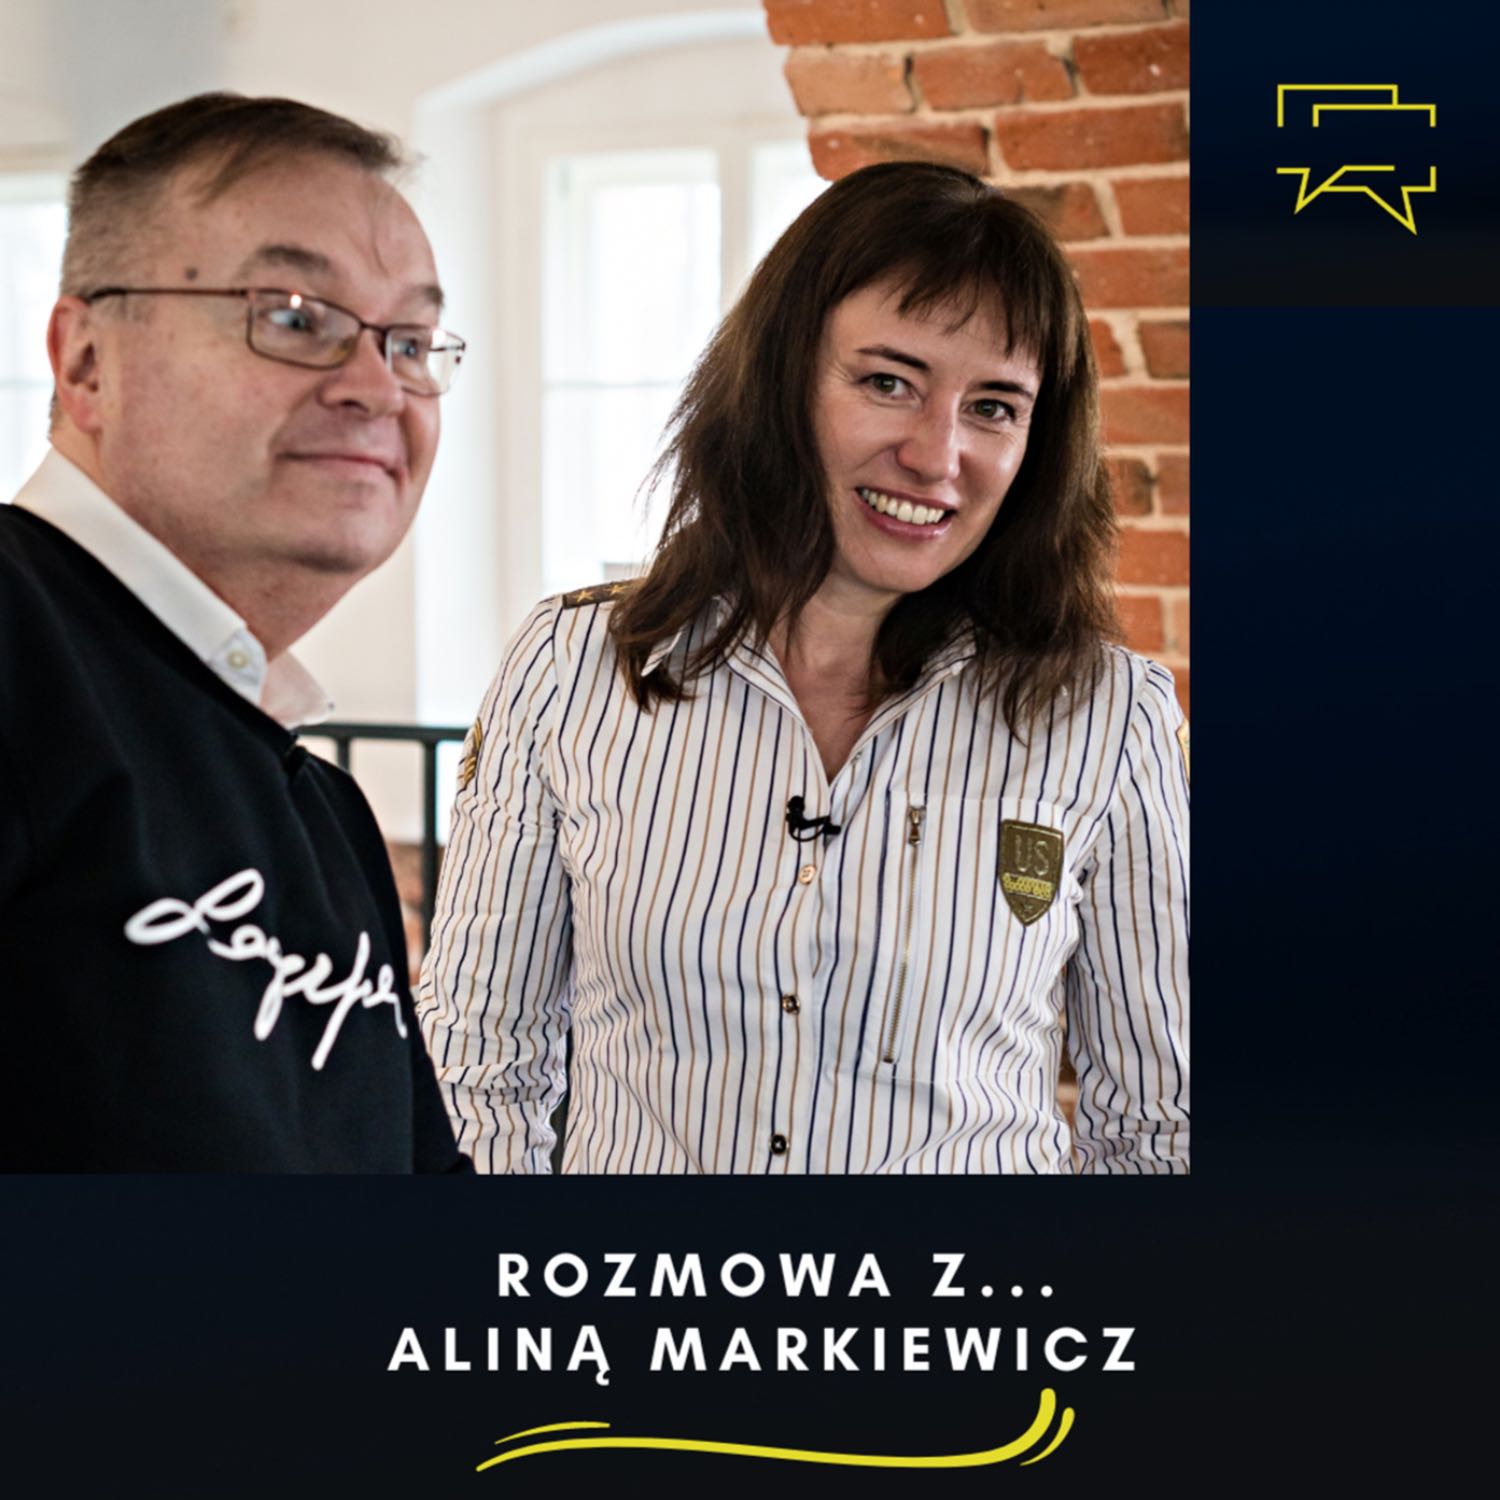 rozmowa z Człowiekiem - Alina Markiewicz - dziennikarka, podróżniczka